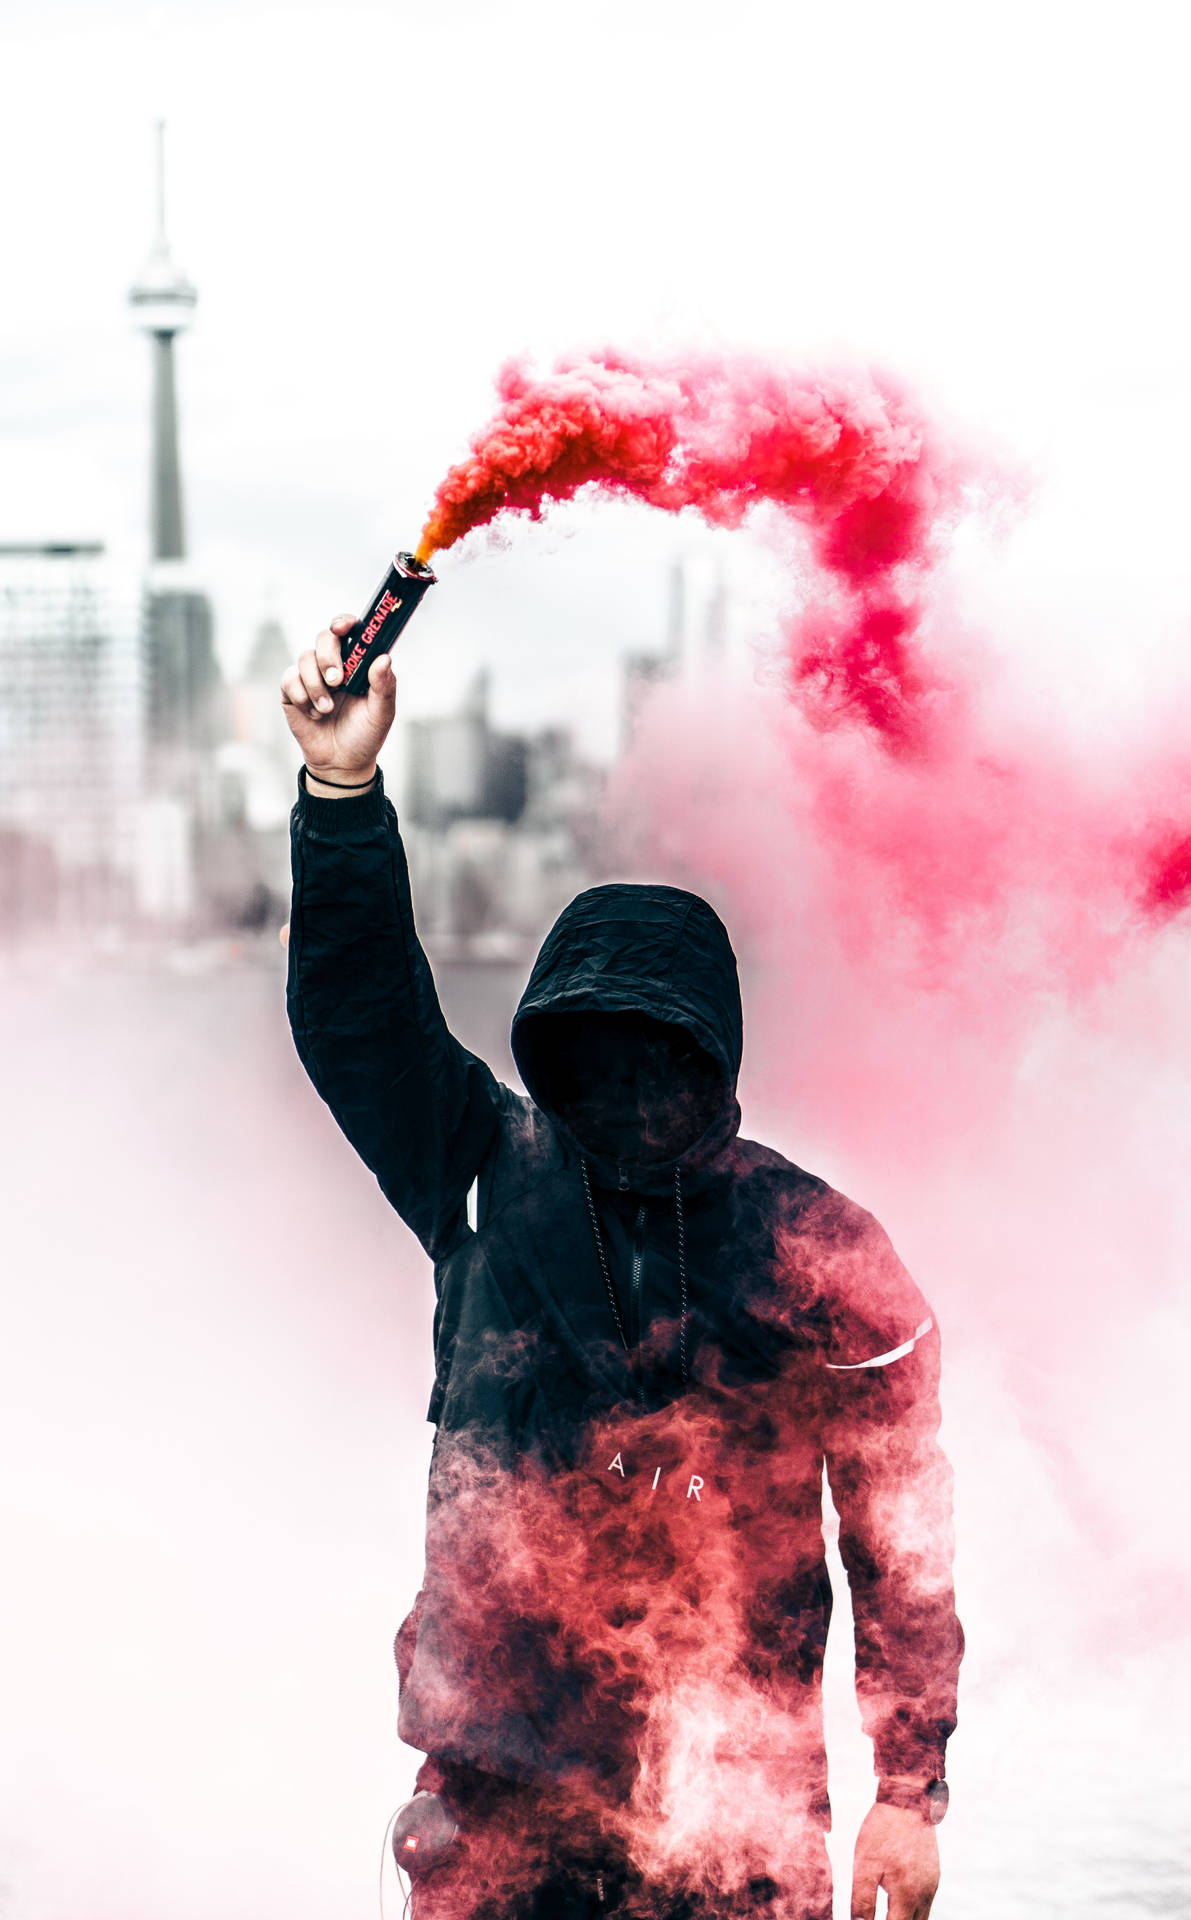 En mand der holder en rød røg pipe i sin højre hånd. Wallpaper